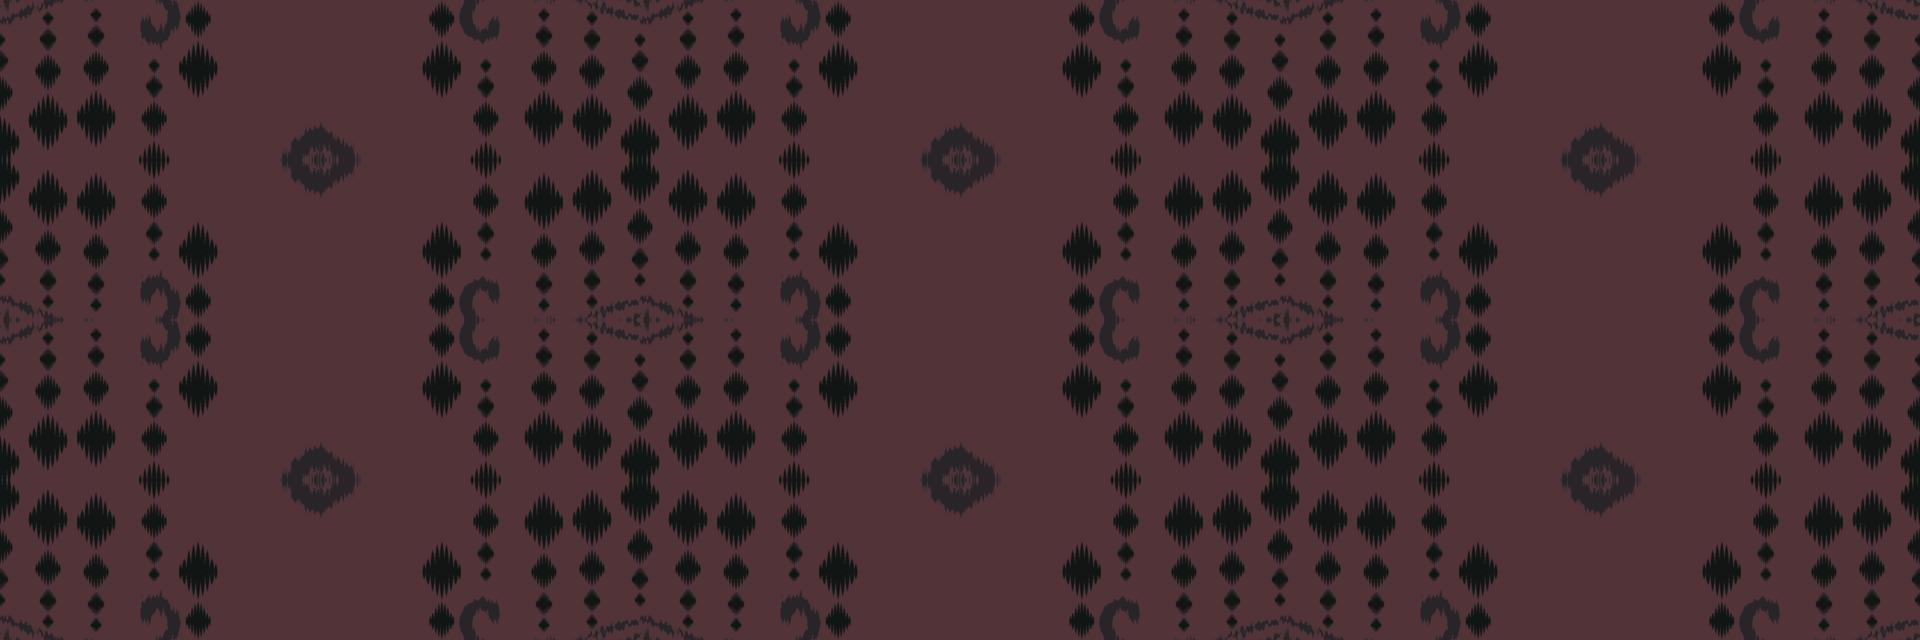 batik textil- ikat vektor sömlös mönster digital vektor design för skriva ut saree kurti borneo tyg gräns borsta symboler färgrutor bomull